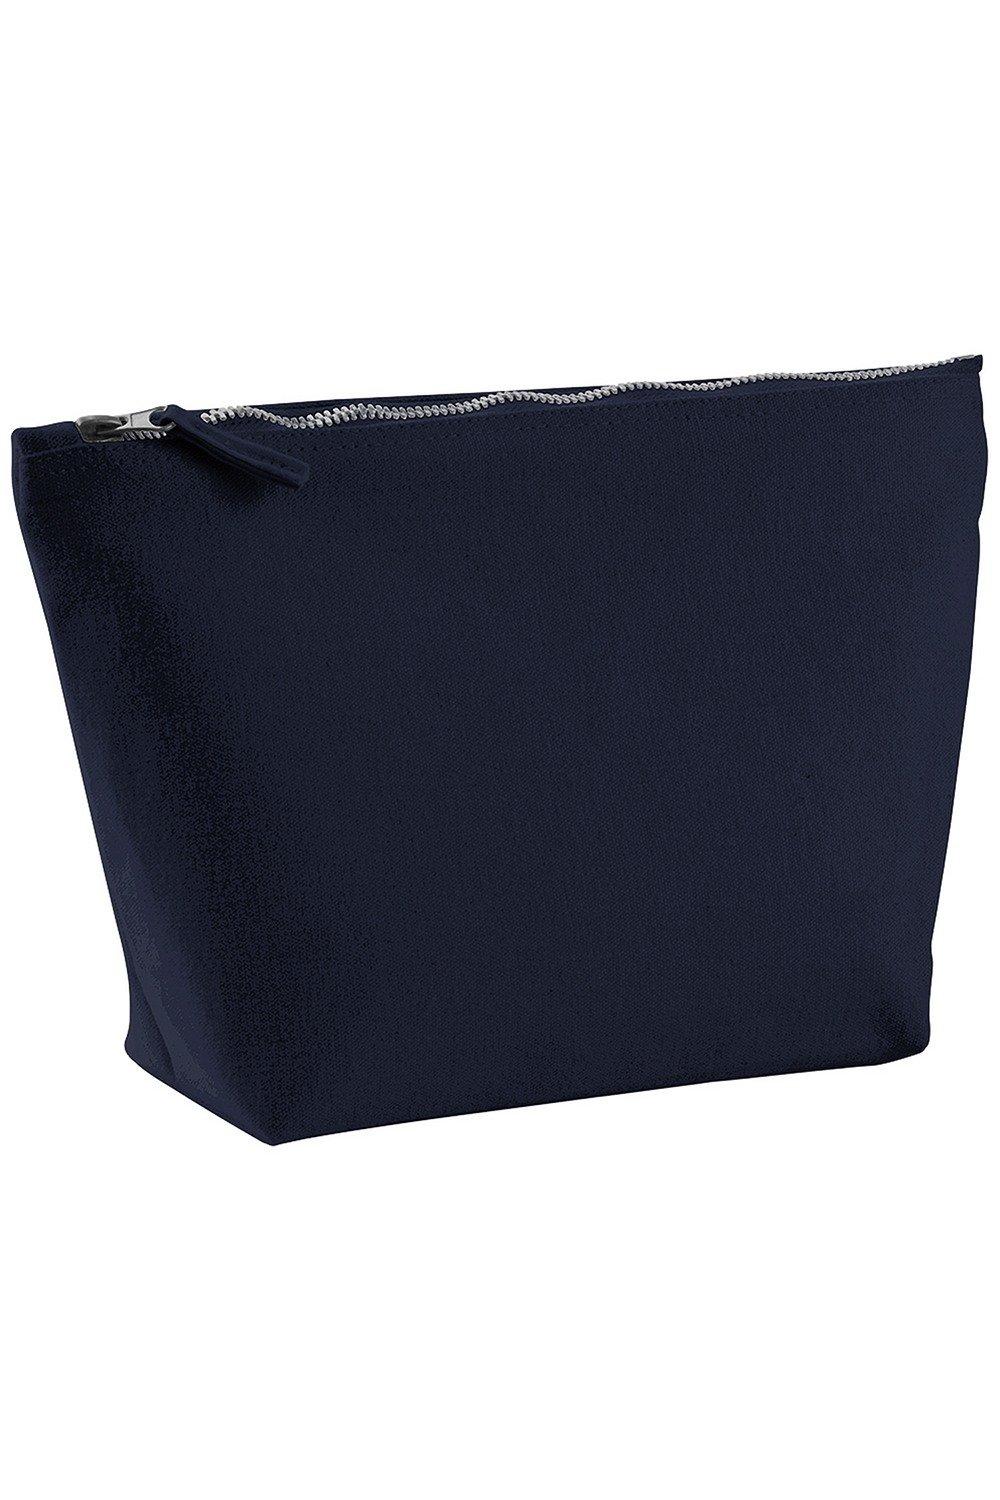 Холщовая сумка для аксессуаров (2 шт.) Westford Mill, темно-синий 200 шт упаковка бумажные наклейки в винтажном стиле